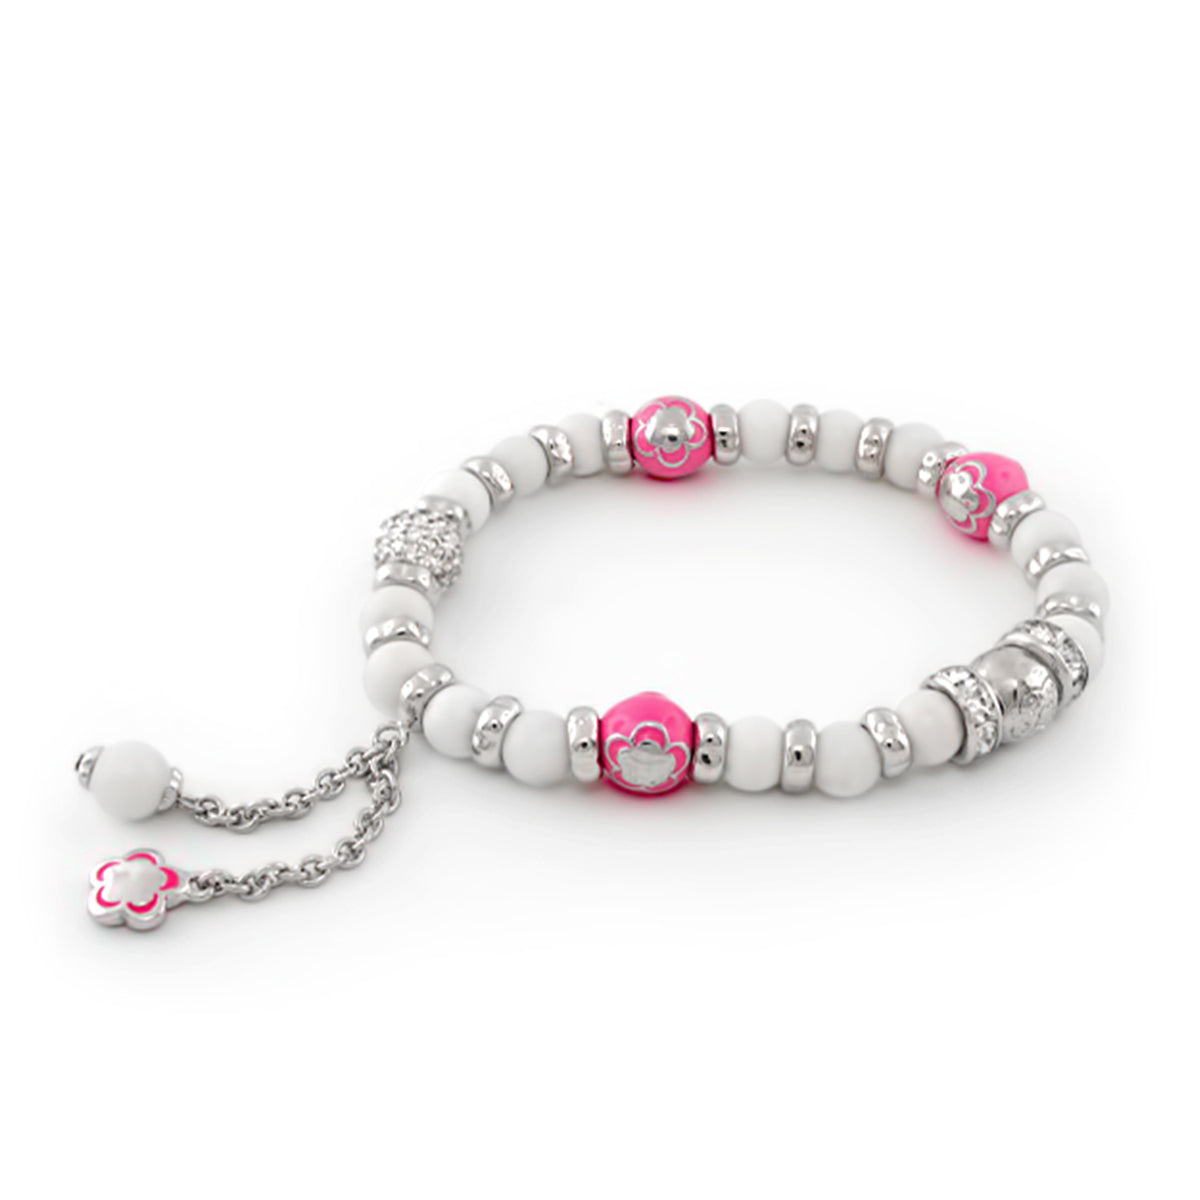 Children's Bead Bracelet